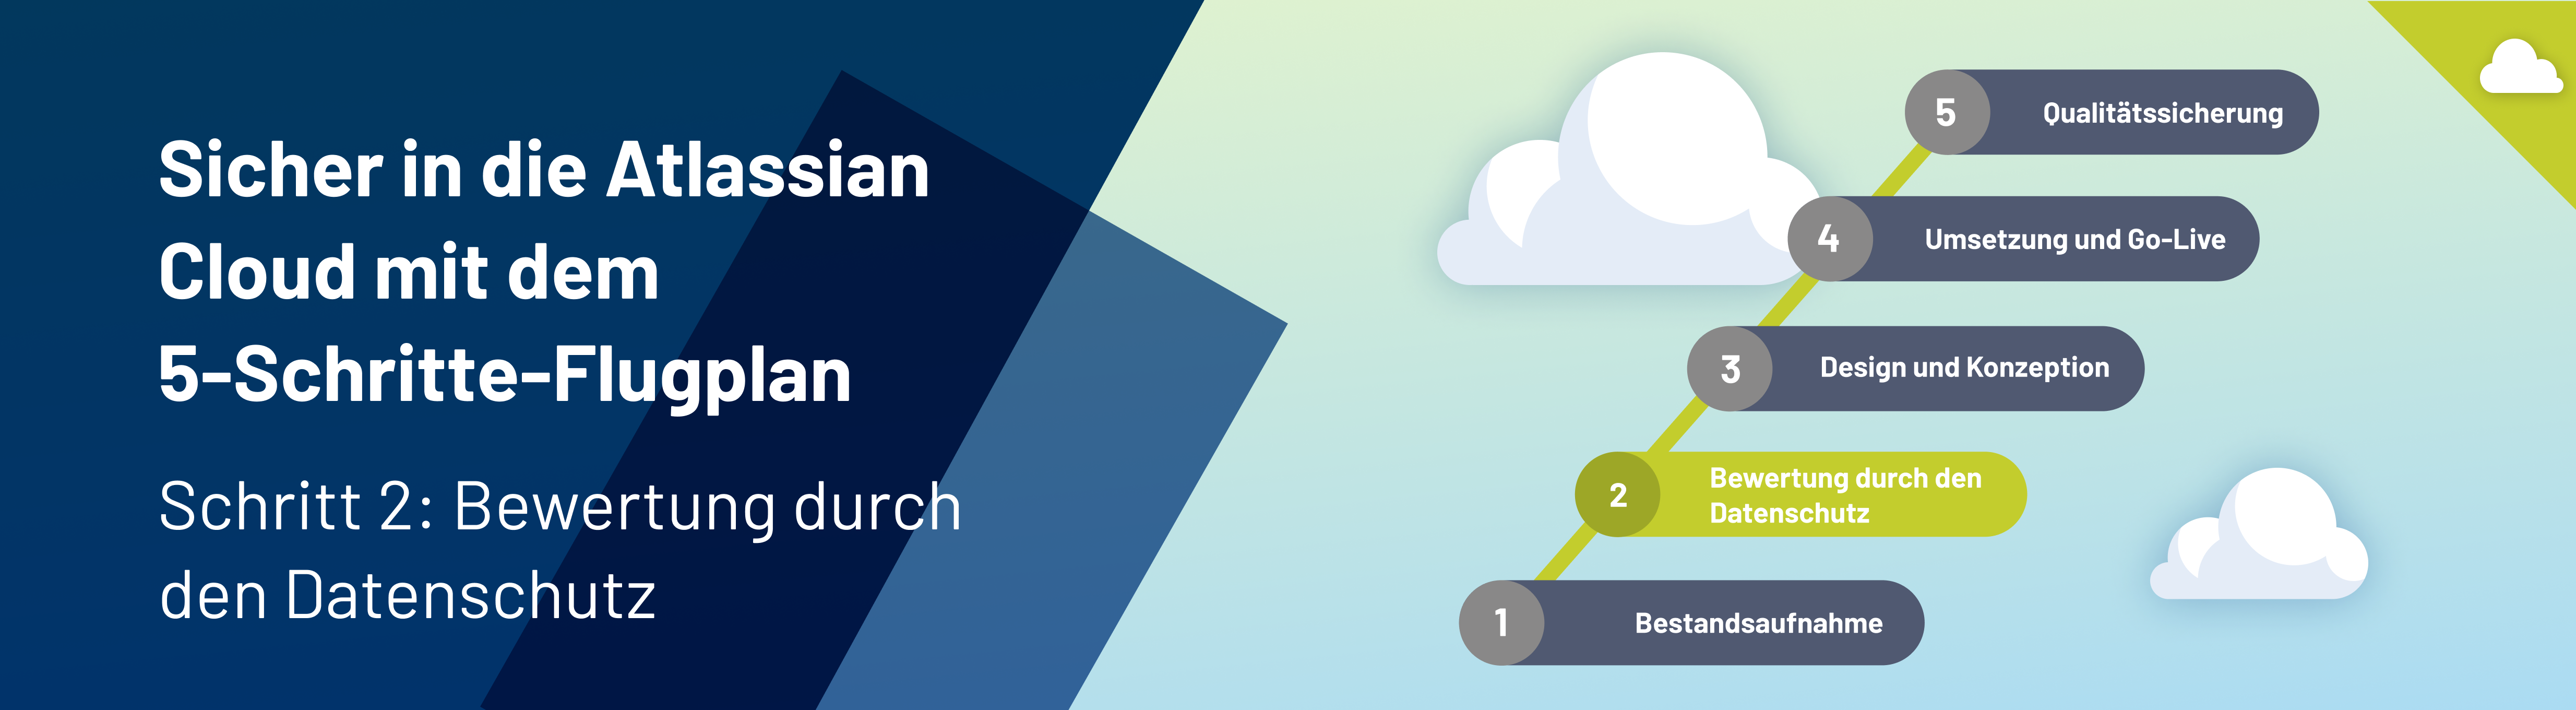 Atlassian Cloud Flugplan Schritt 2: Bewertung durch den Datenschutz - Headerbild